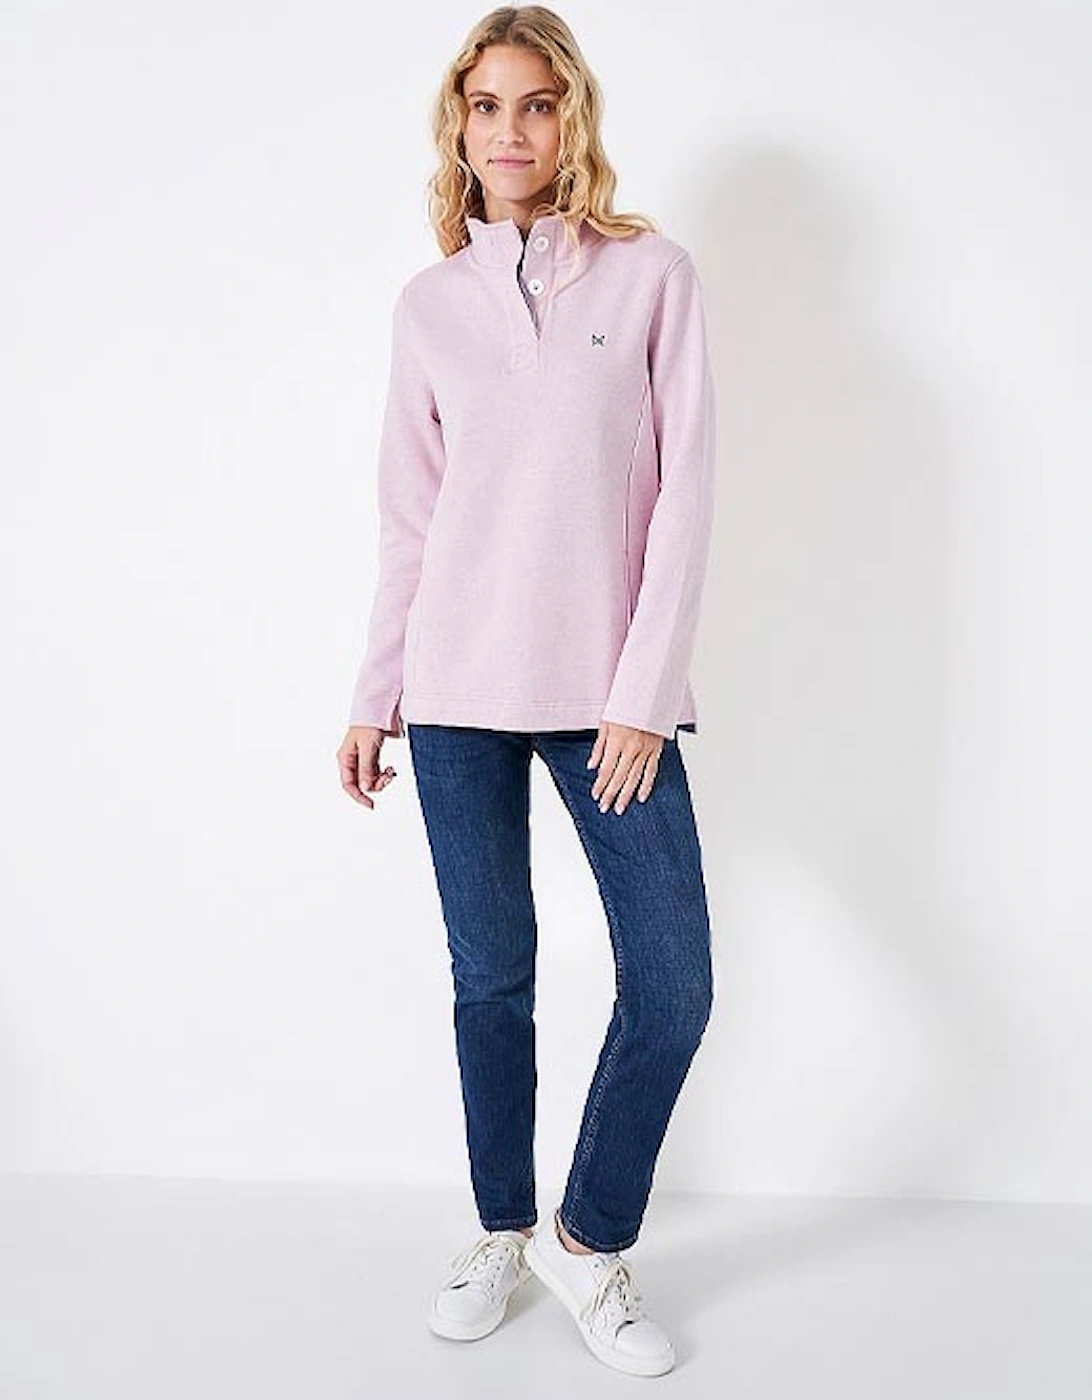 Women's Half Button Sweatshirt Pink